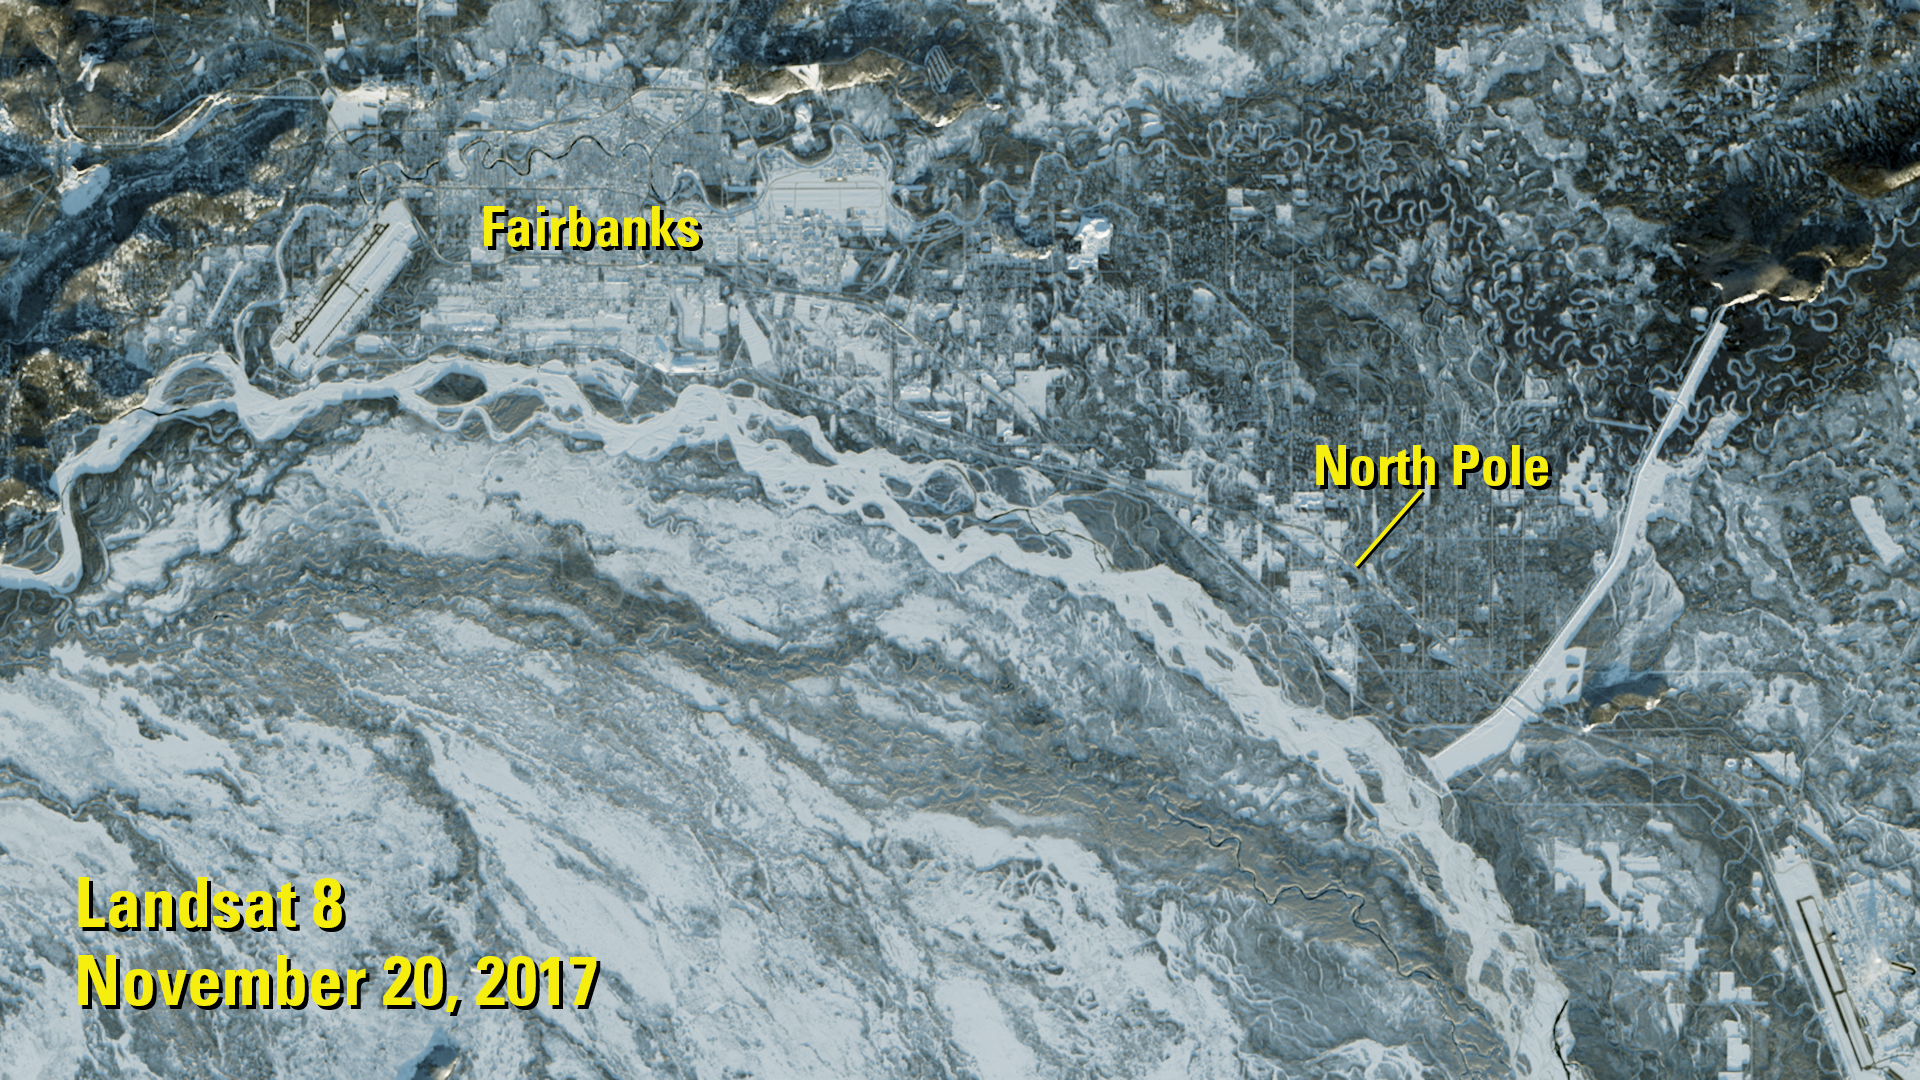 Landsat 8 image of North Pole, Alaska